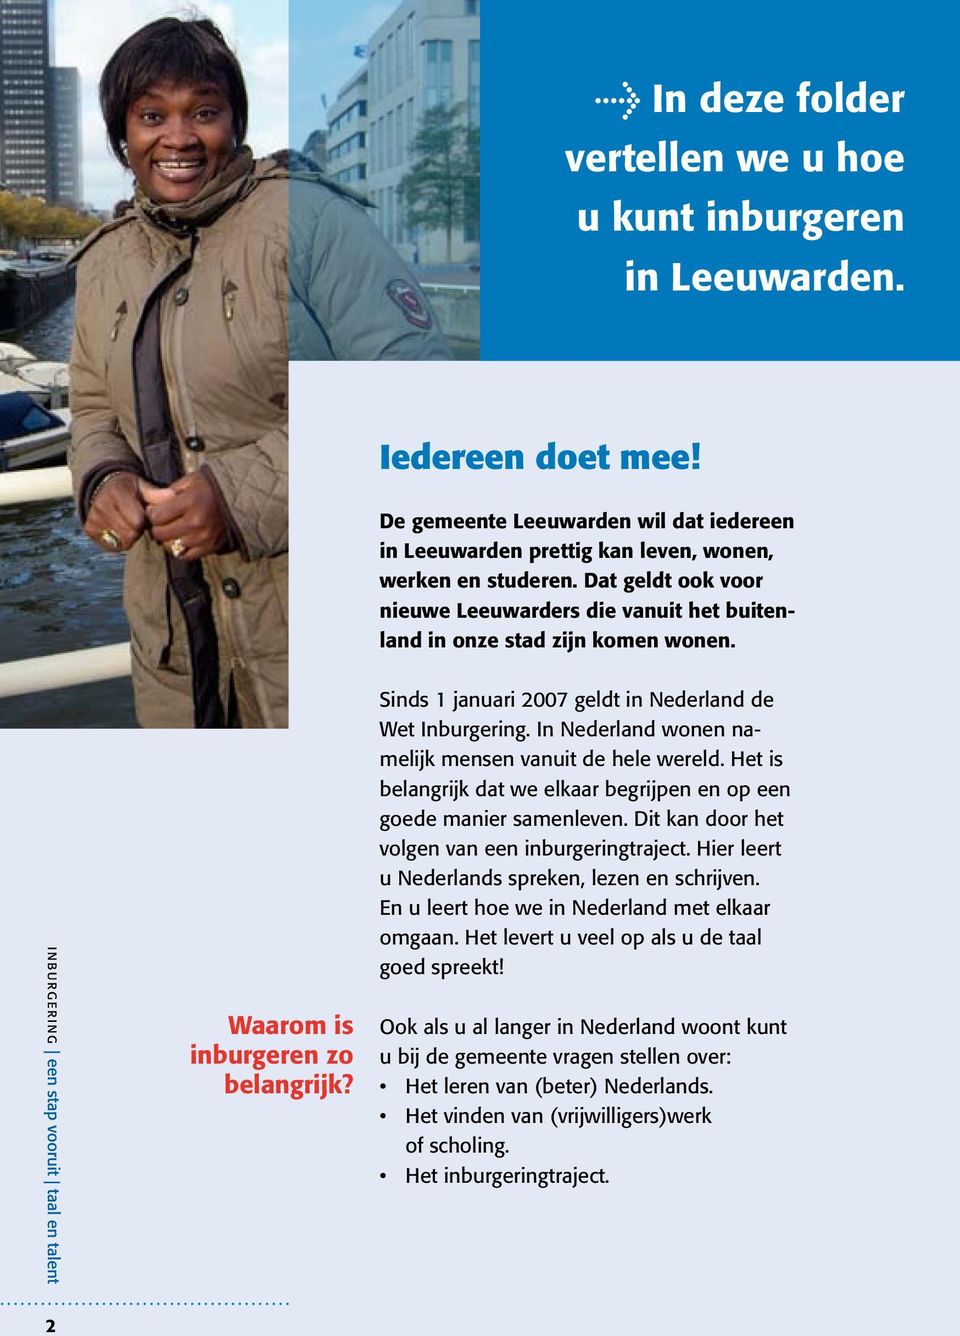 In Nederland wonen namelijk mensen vanuit de hele wereld. Het is belangrijk dat we elkaar begrijpen en op een goede manier samenleven. Dit kan door het volgen van een inburgeringtraject.